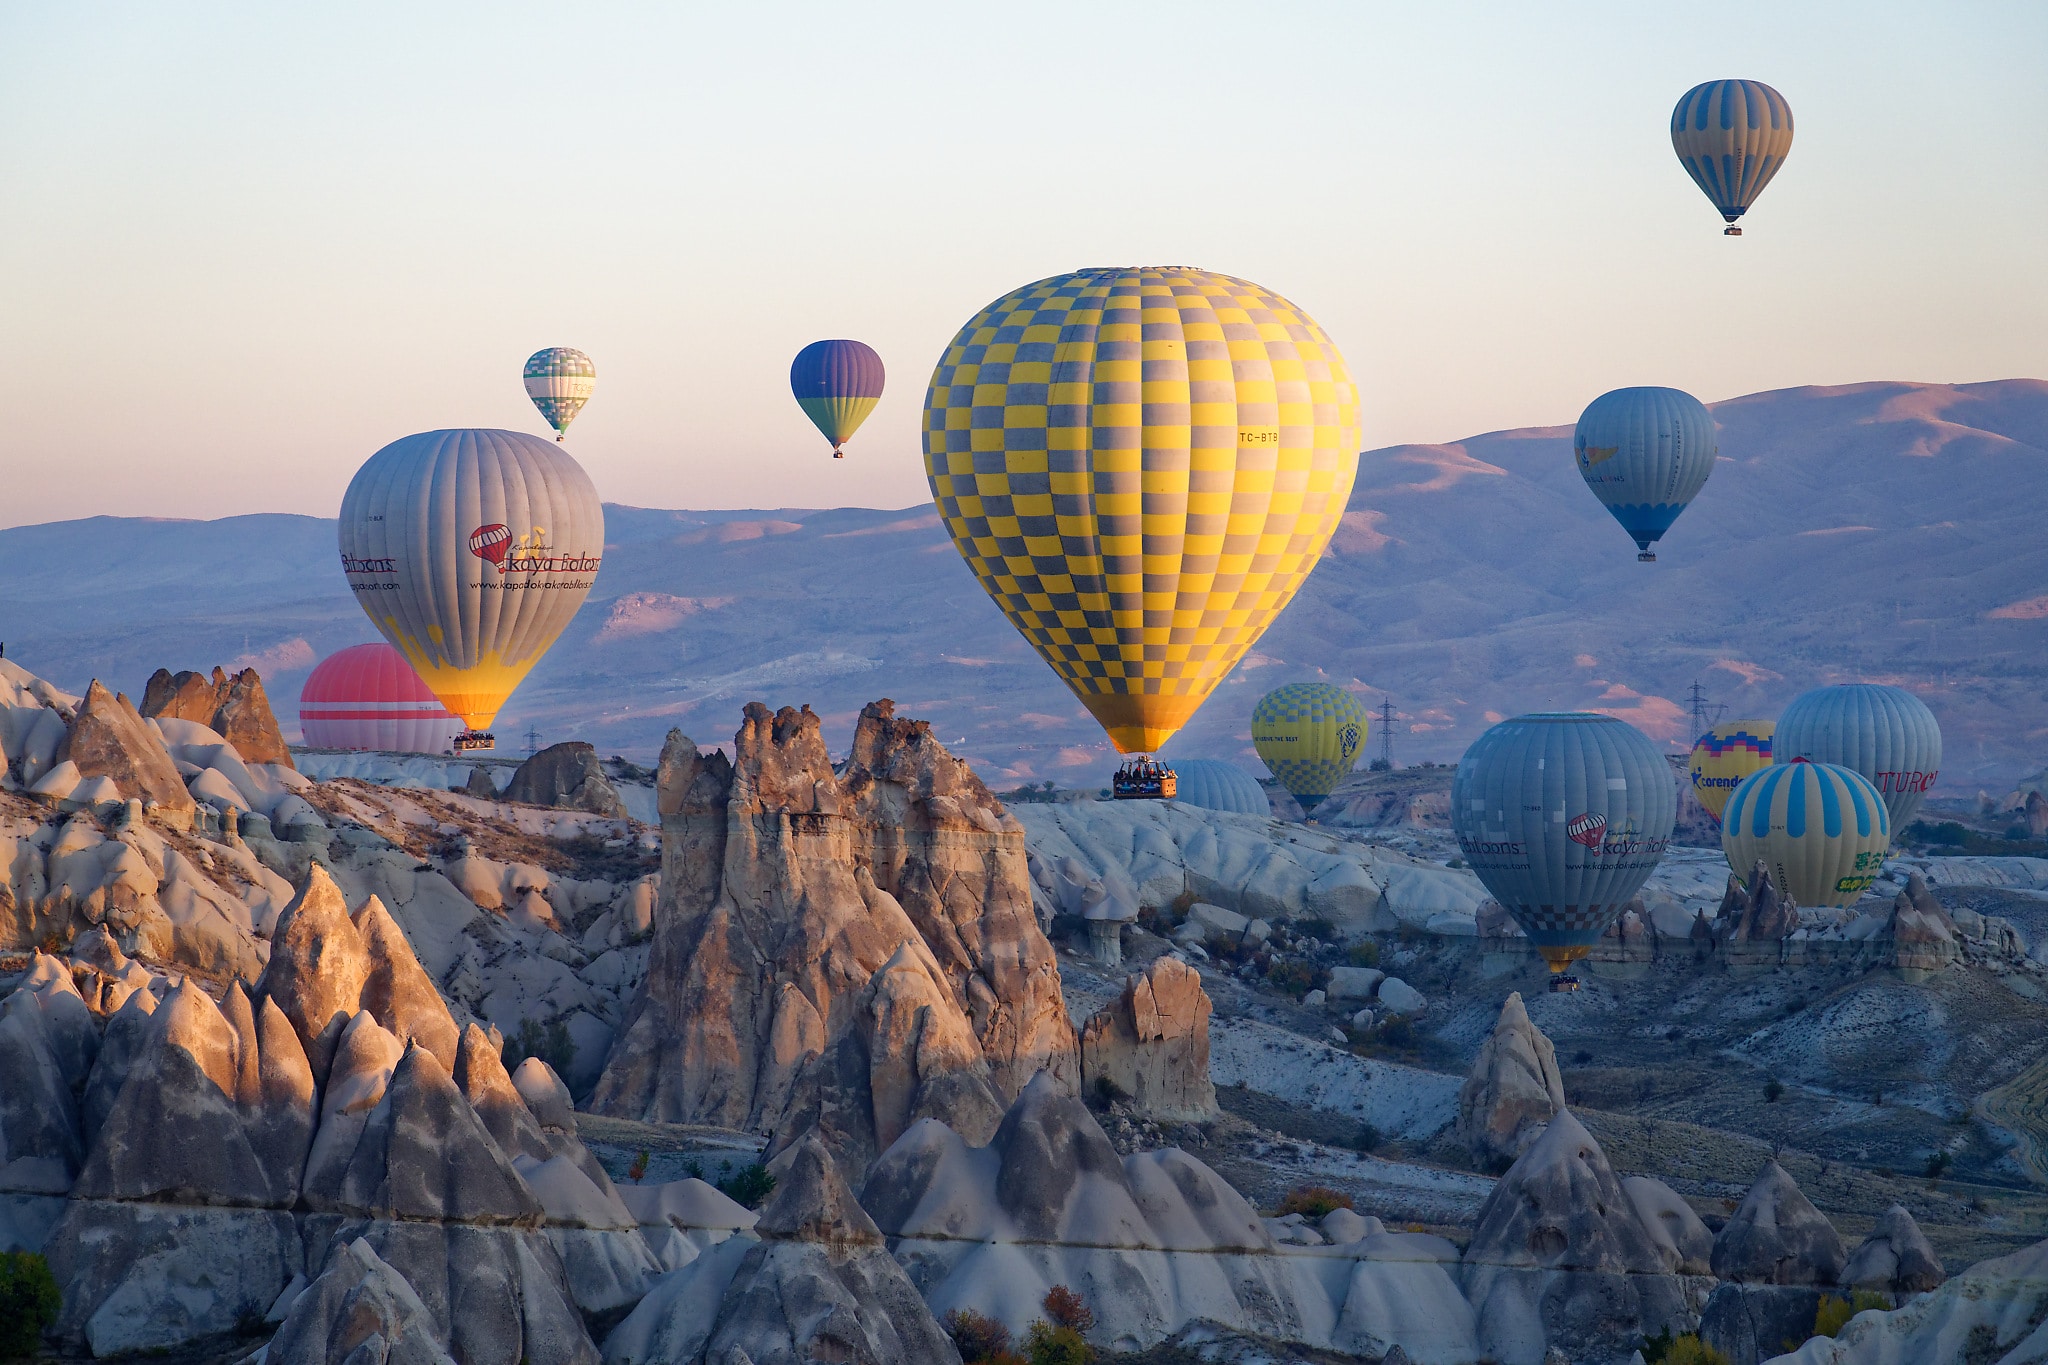 Vol en montgolfière en Cappadoce: conseils et infos pratiques